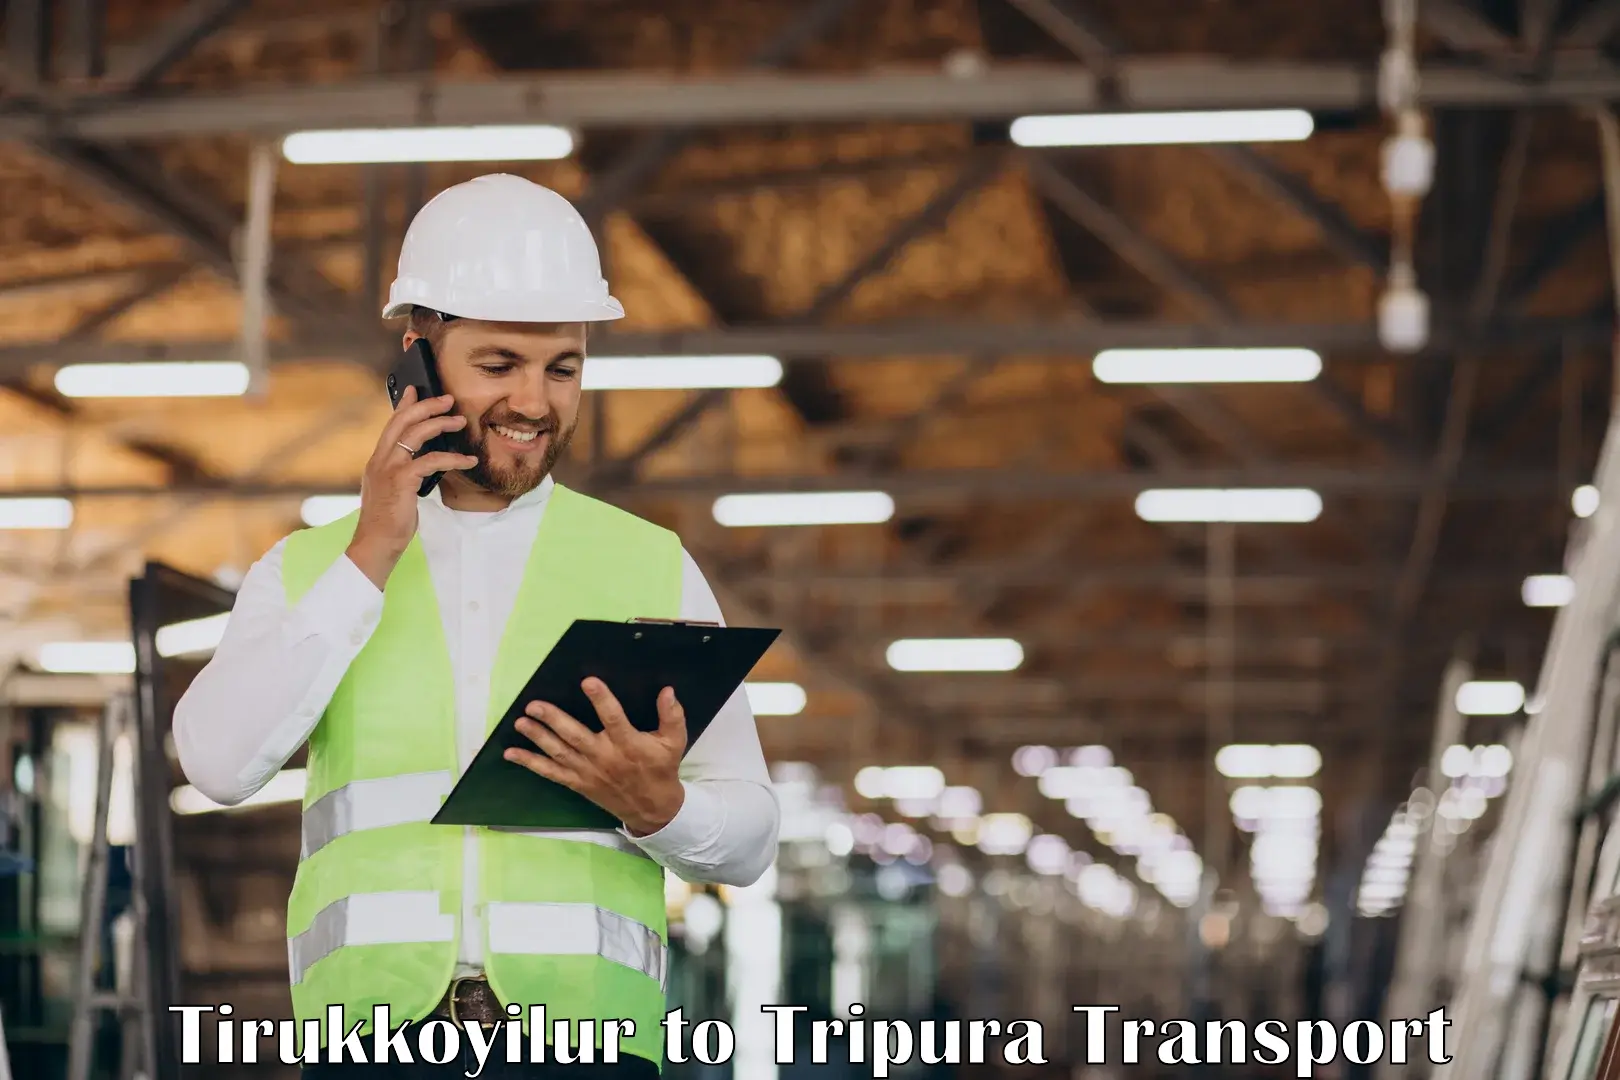 Shipping services Tirukkoyilur to North Tripura